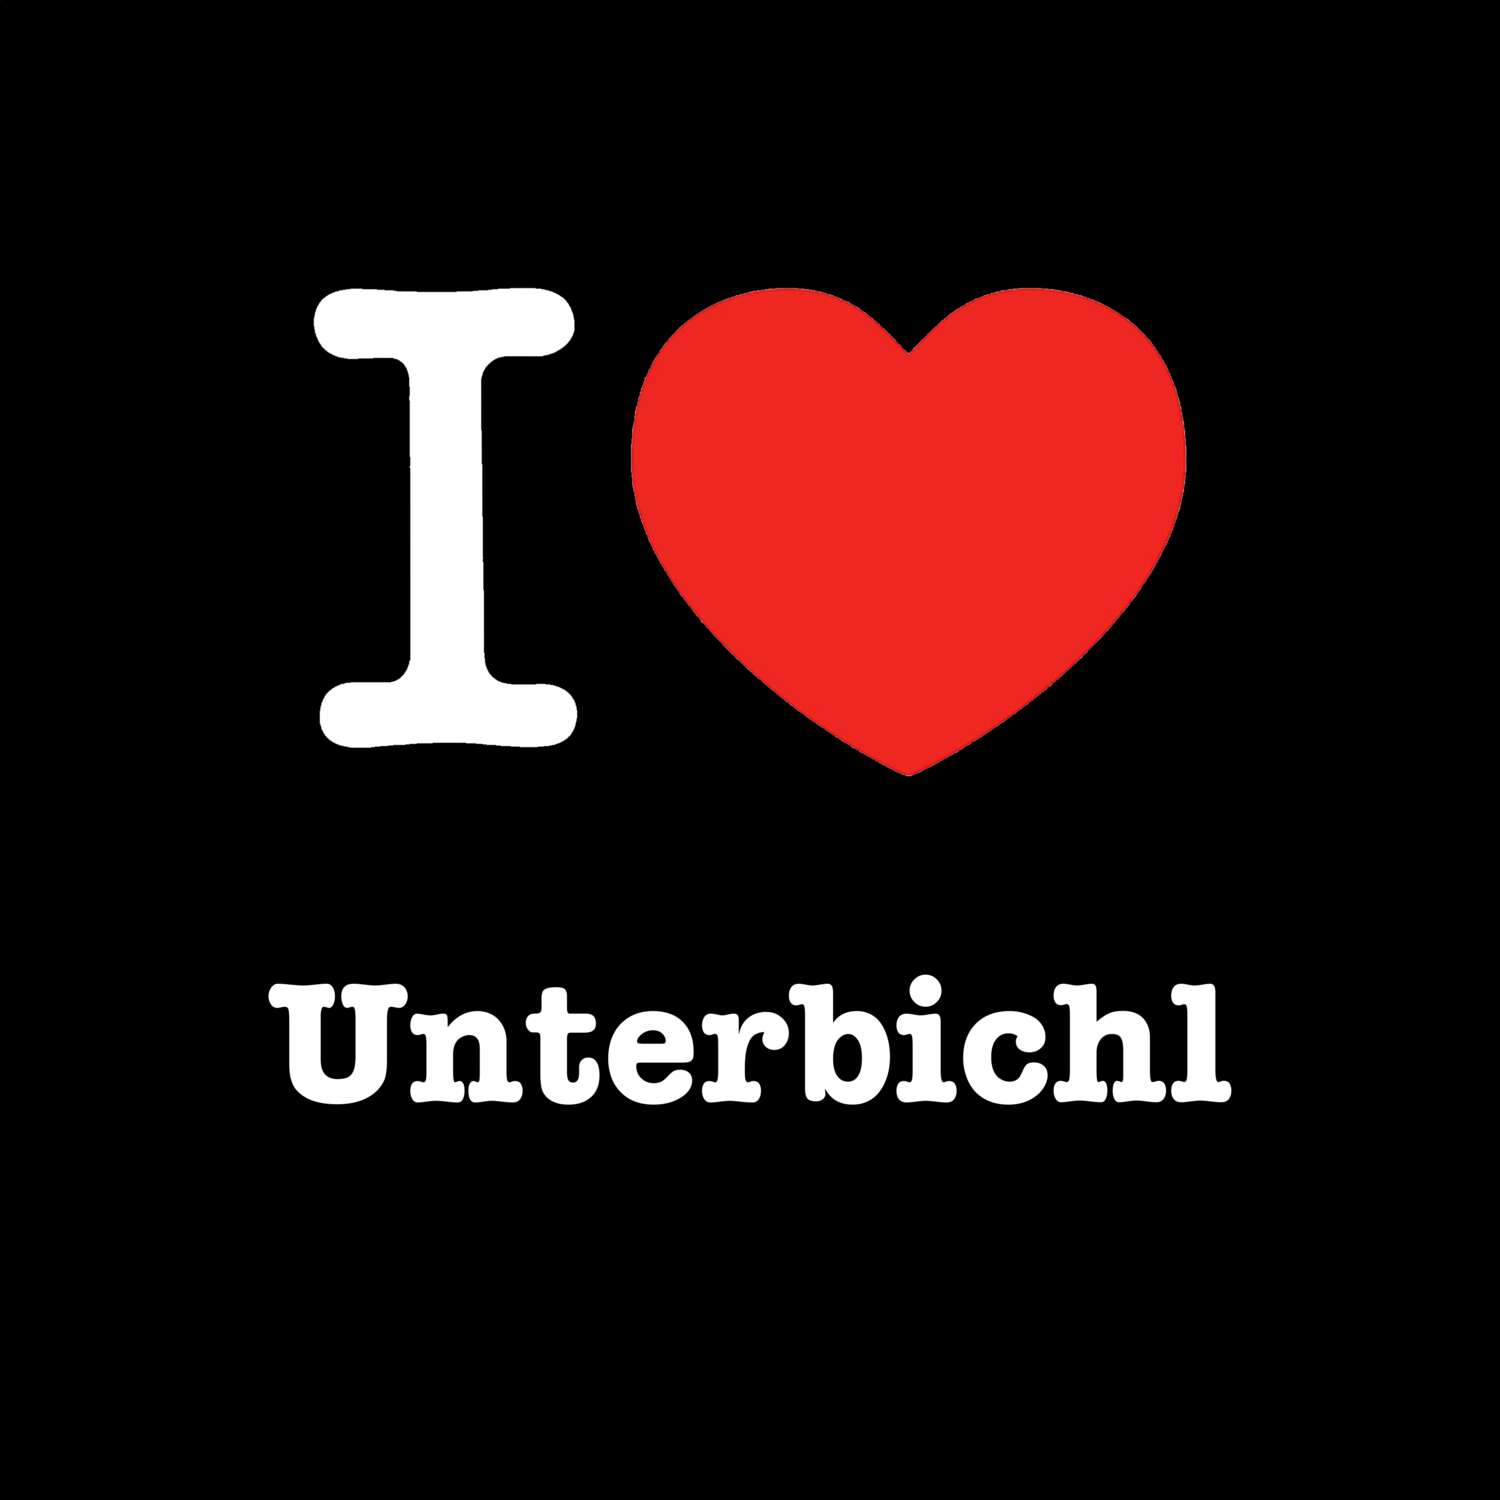 Unterbichl T-Shirt »I love«